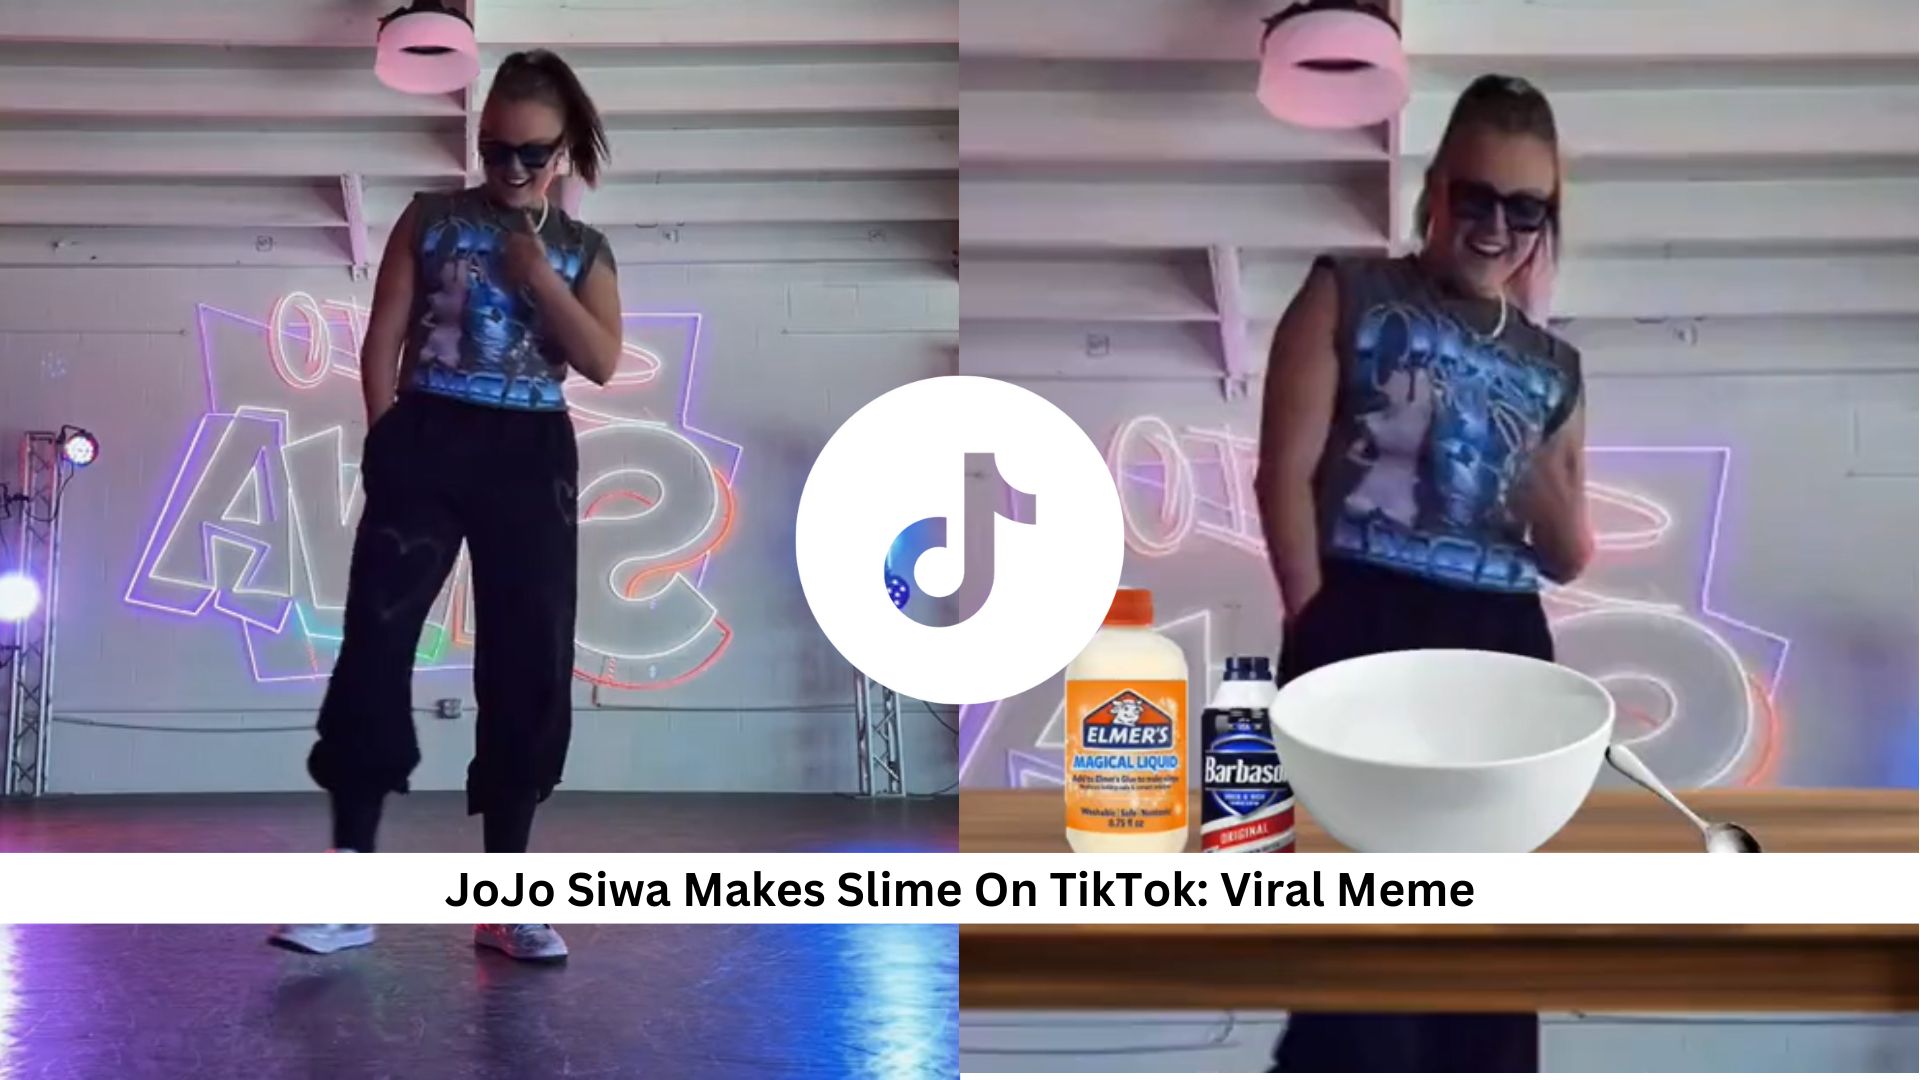 JoJo-Siwa-Makes-Slime-On-TikTok-Viral-Meme